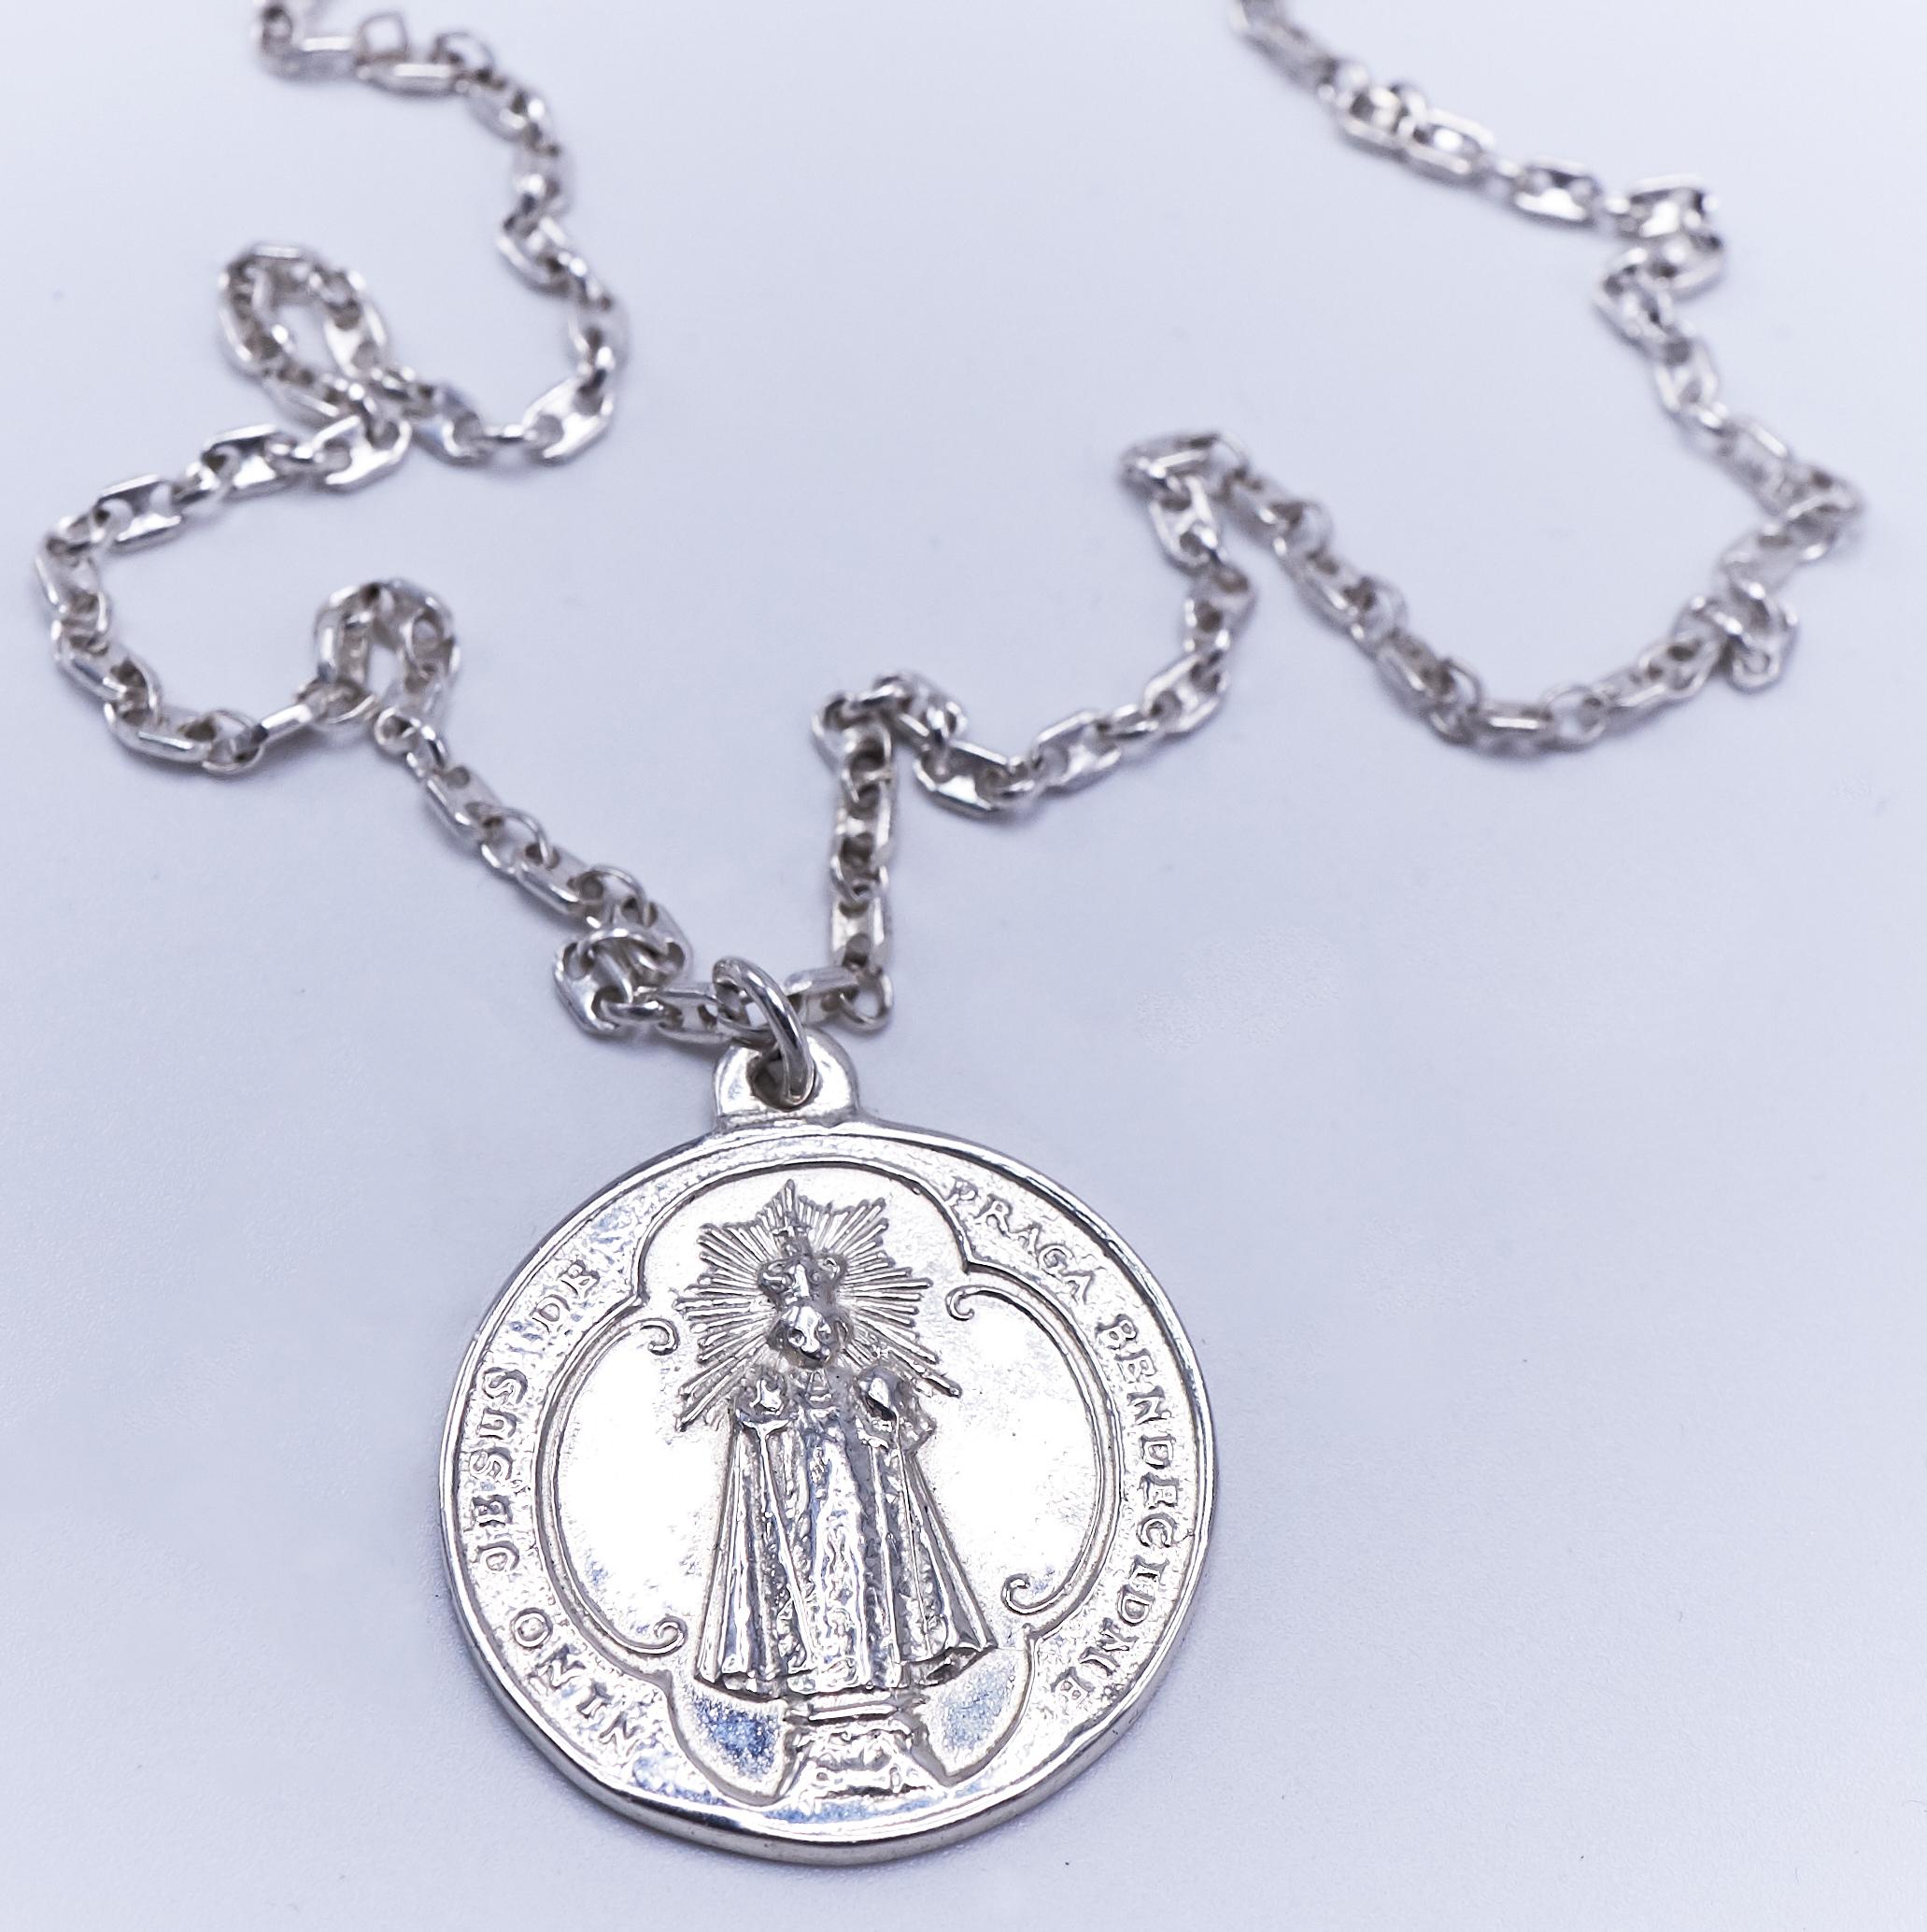 Collier Chaîne Médaille Miraculeuse Vierge Marie Diamant Noir Argent J Dauphin

Collier J DAUPHIN 